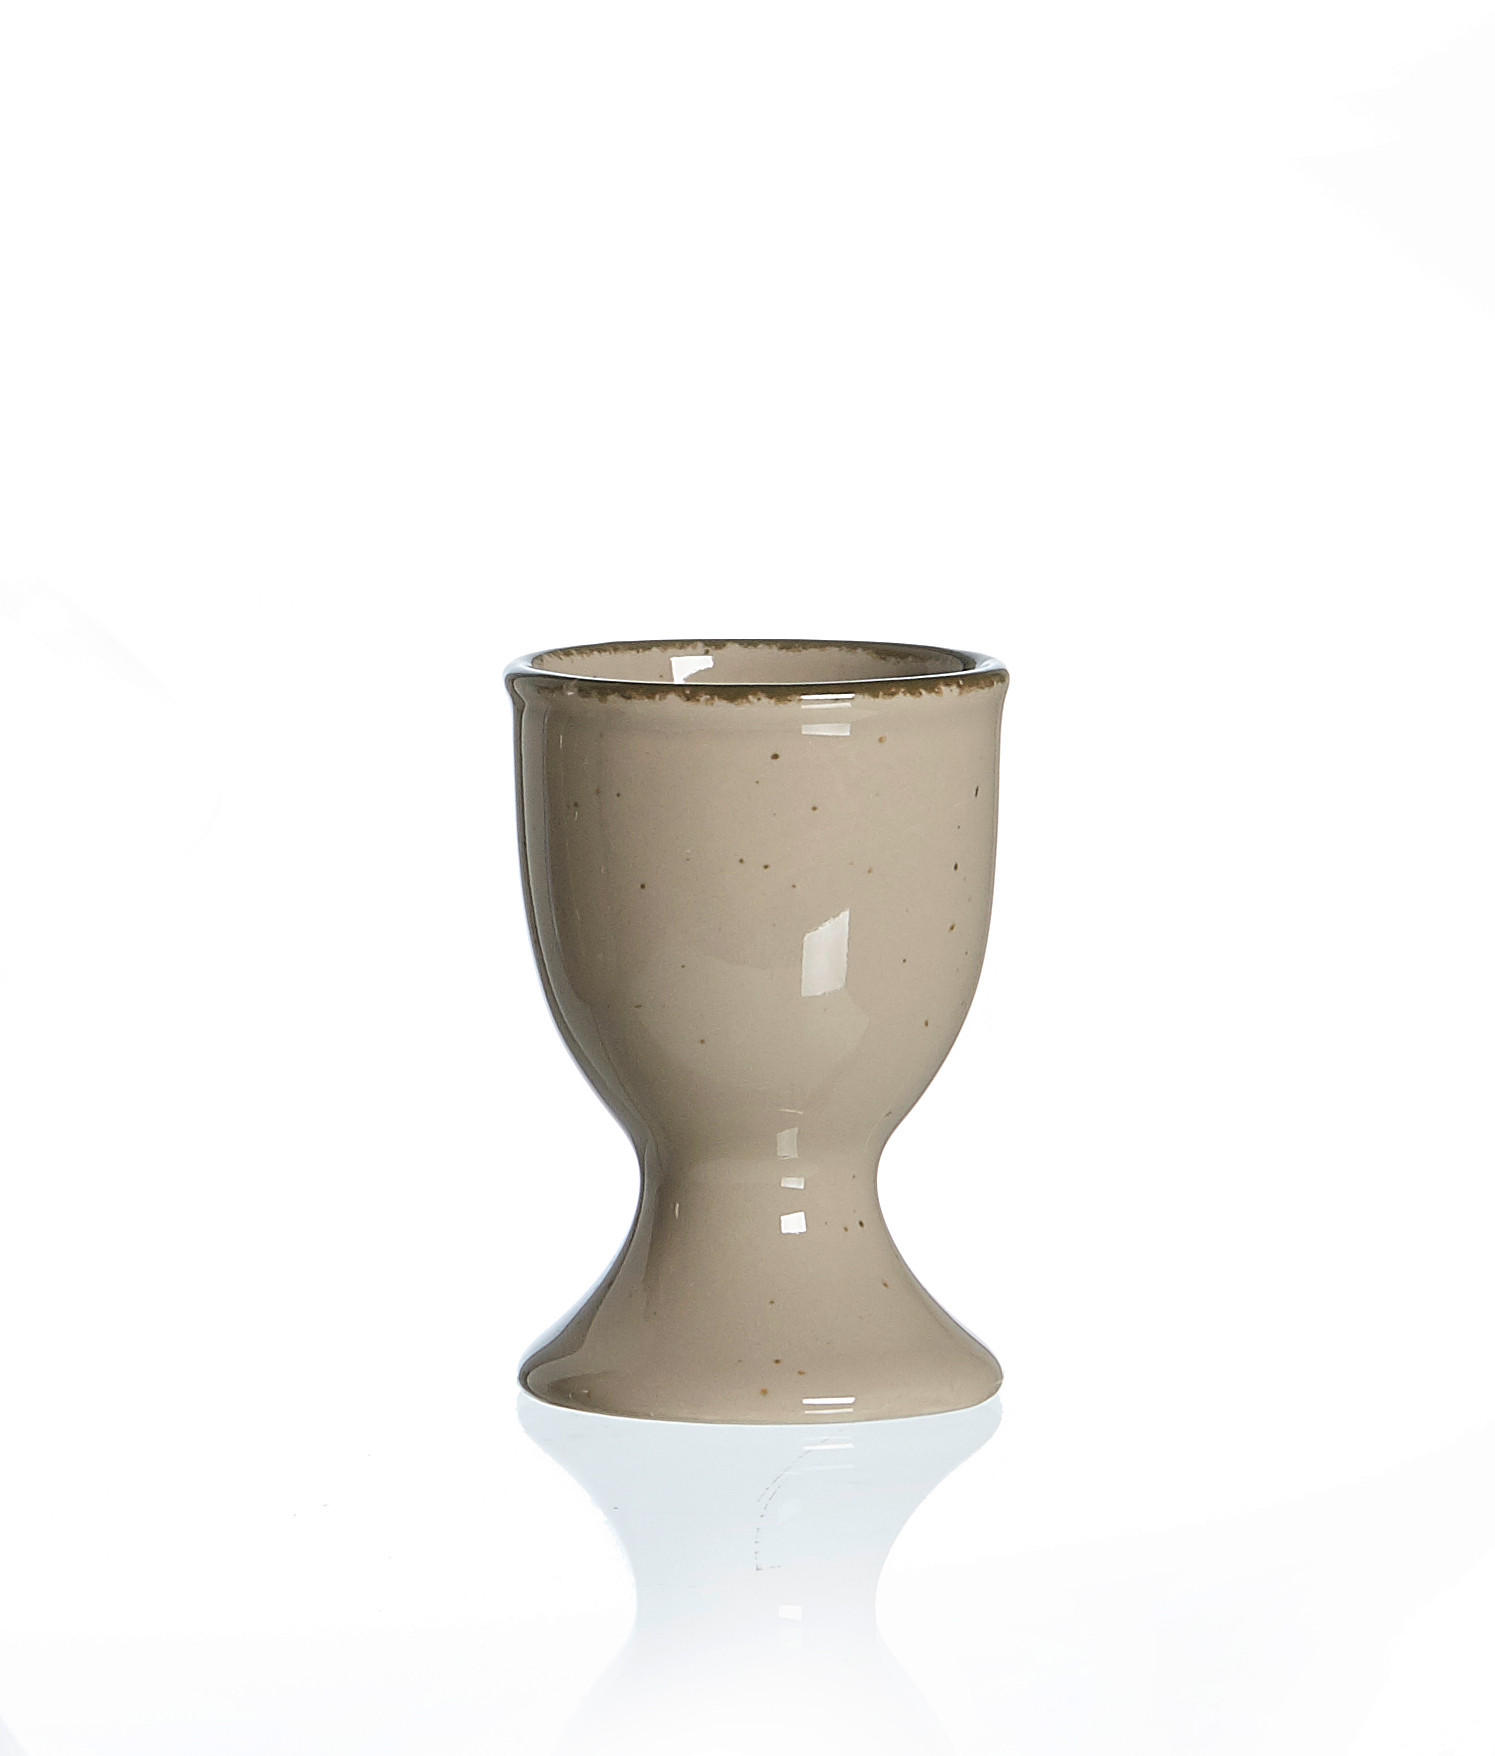 EIERBECHER Keramik Steinzeug  - Braun/Grau, Keramik (5/5/7cm) - Ritzenhoff Breker